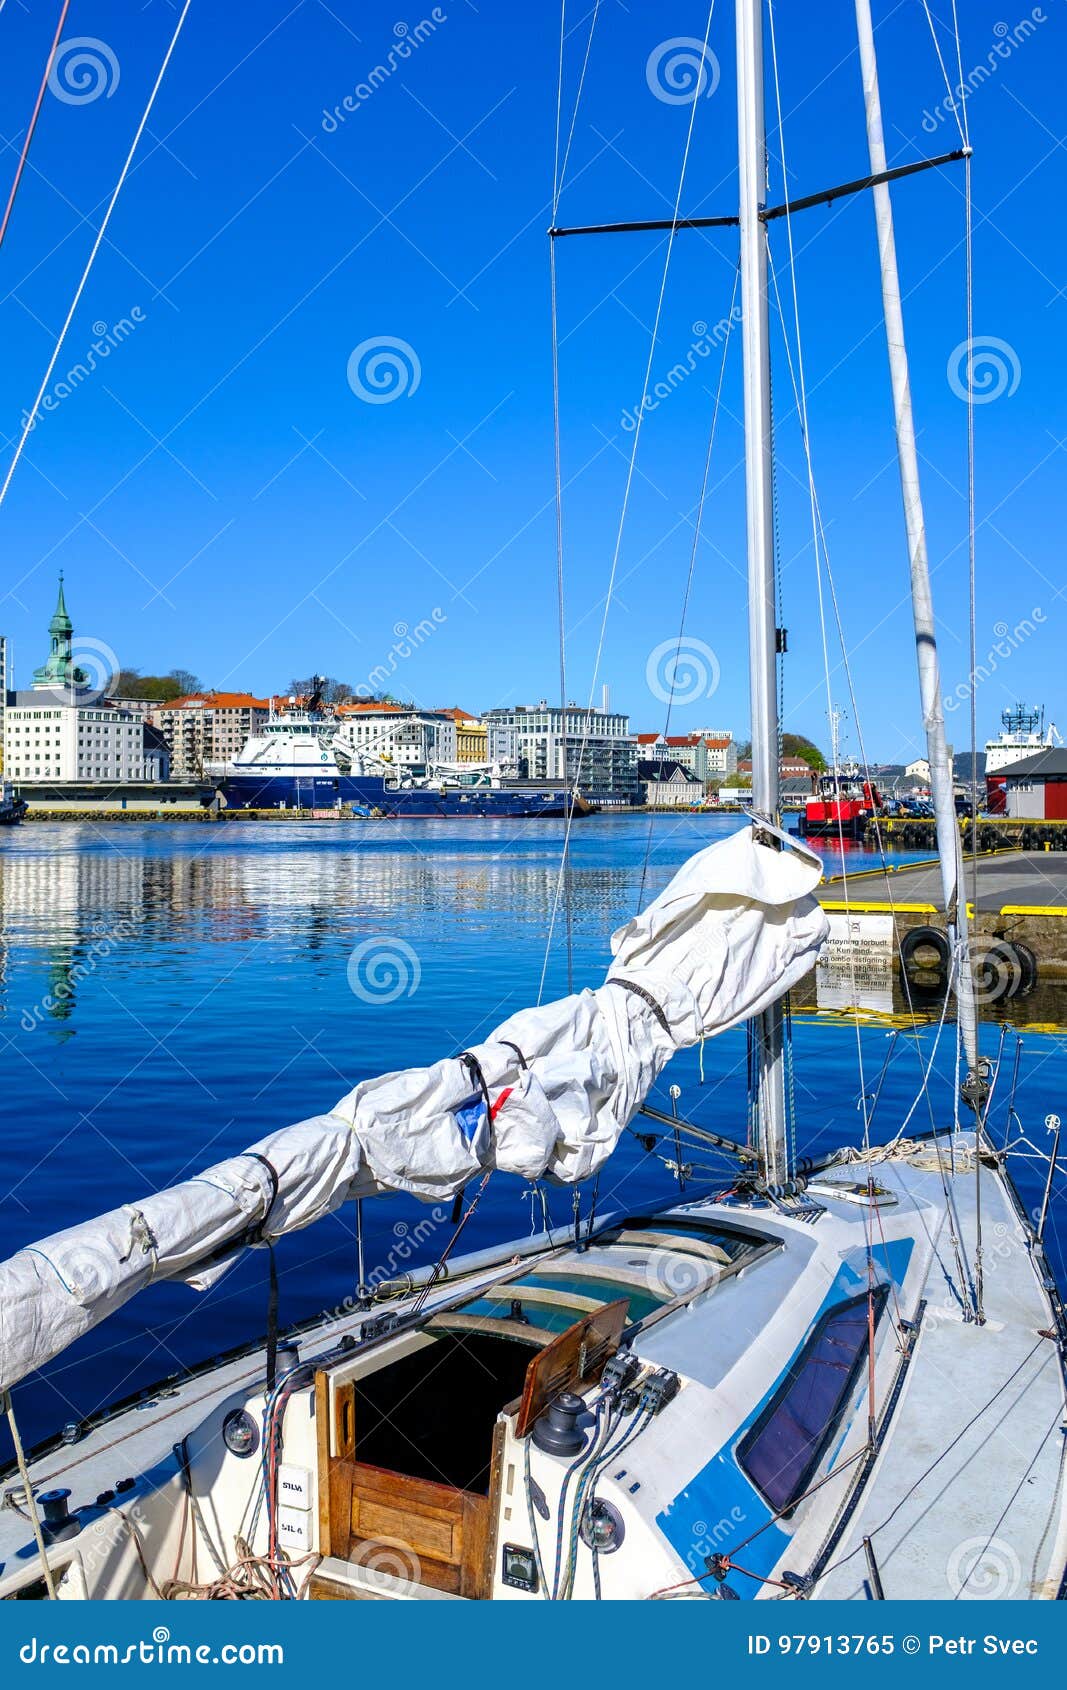 Barco entrado em um porto. Um barco entrou em um porto público no centro de cidade de Bergen, Noruega